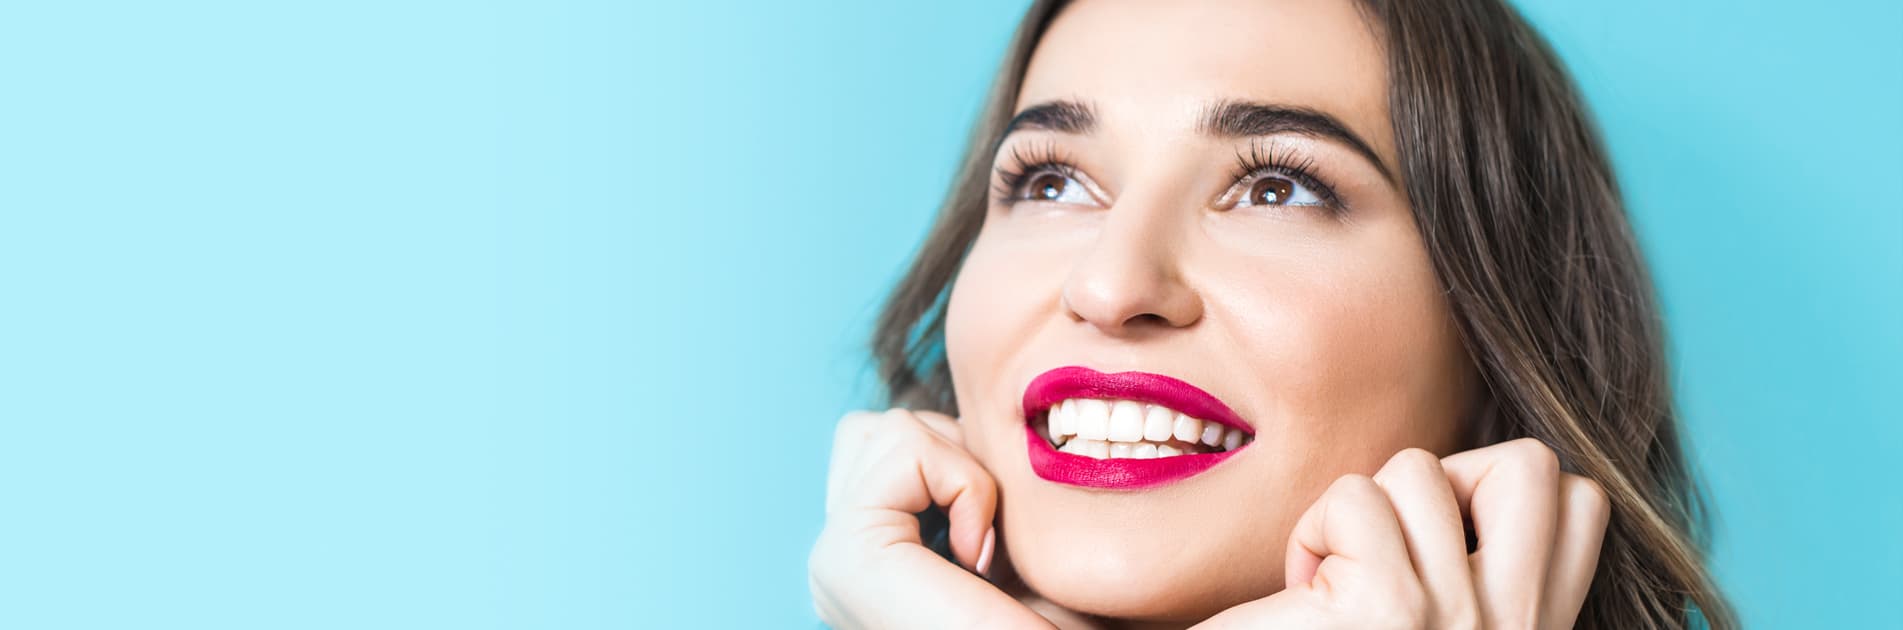 Ağız ve Diş Sağlığı İçin Faydalı Besinler Nelerdir?